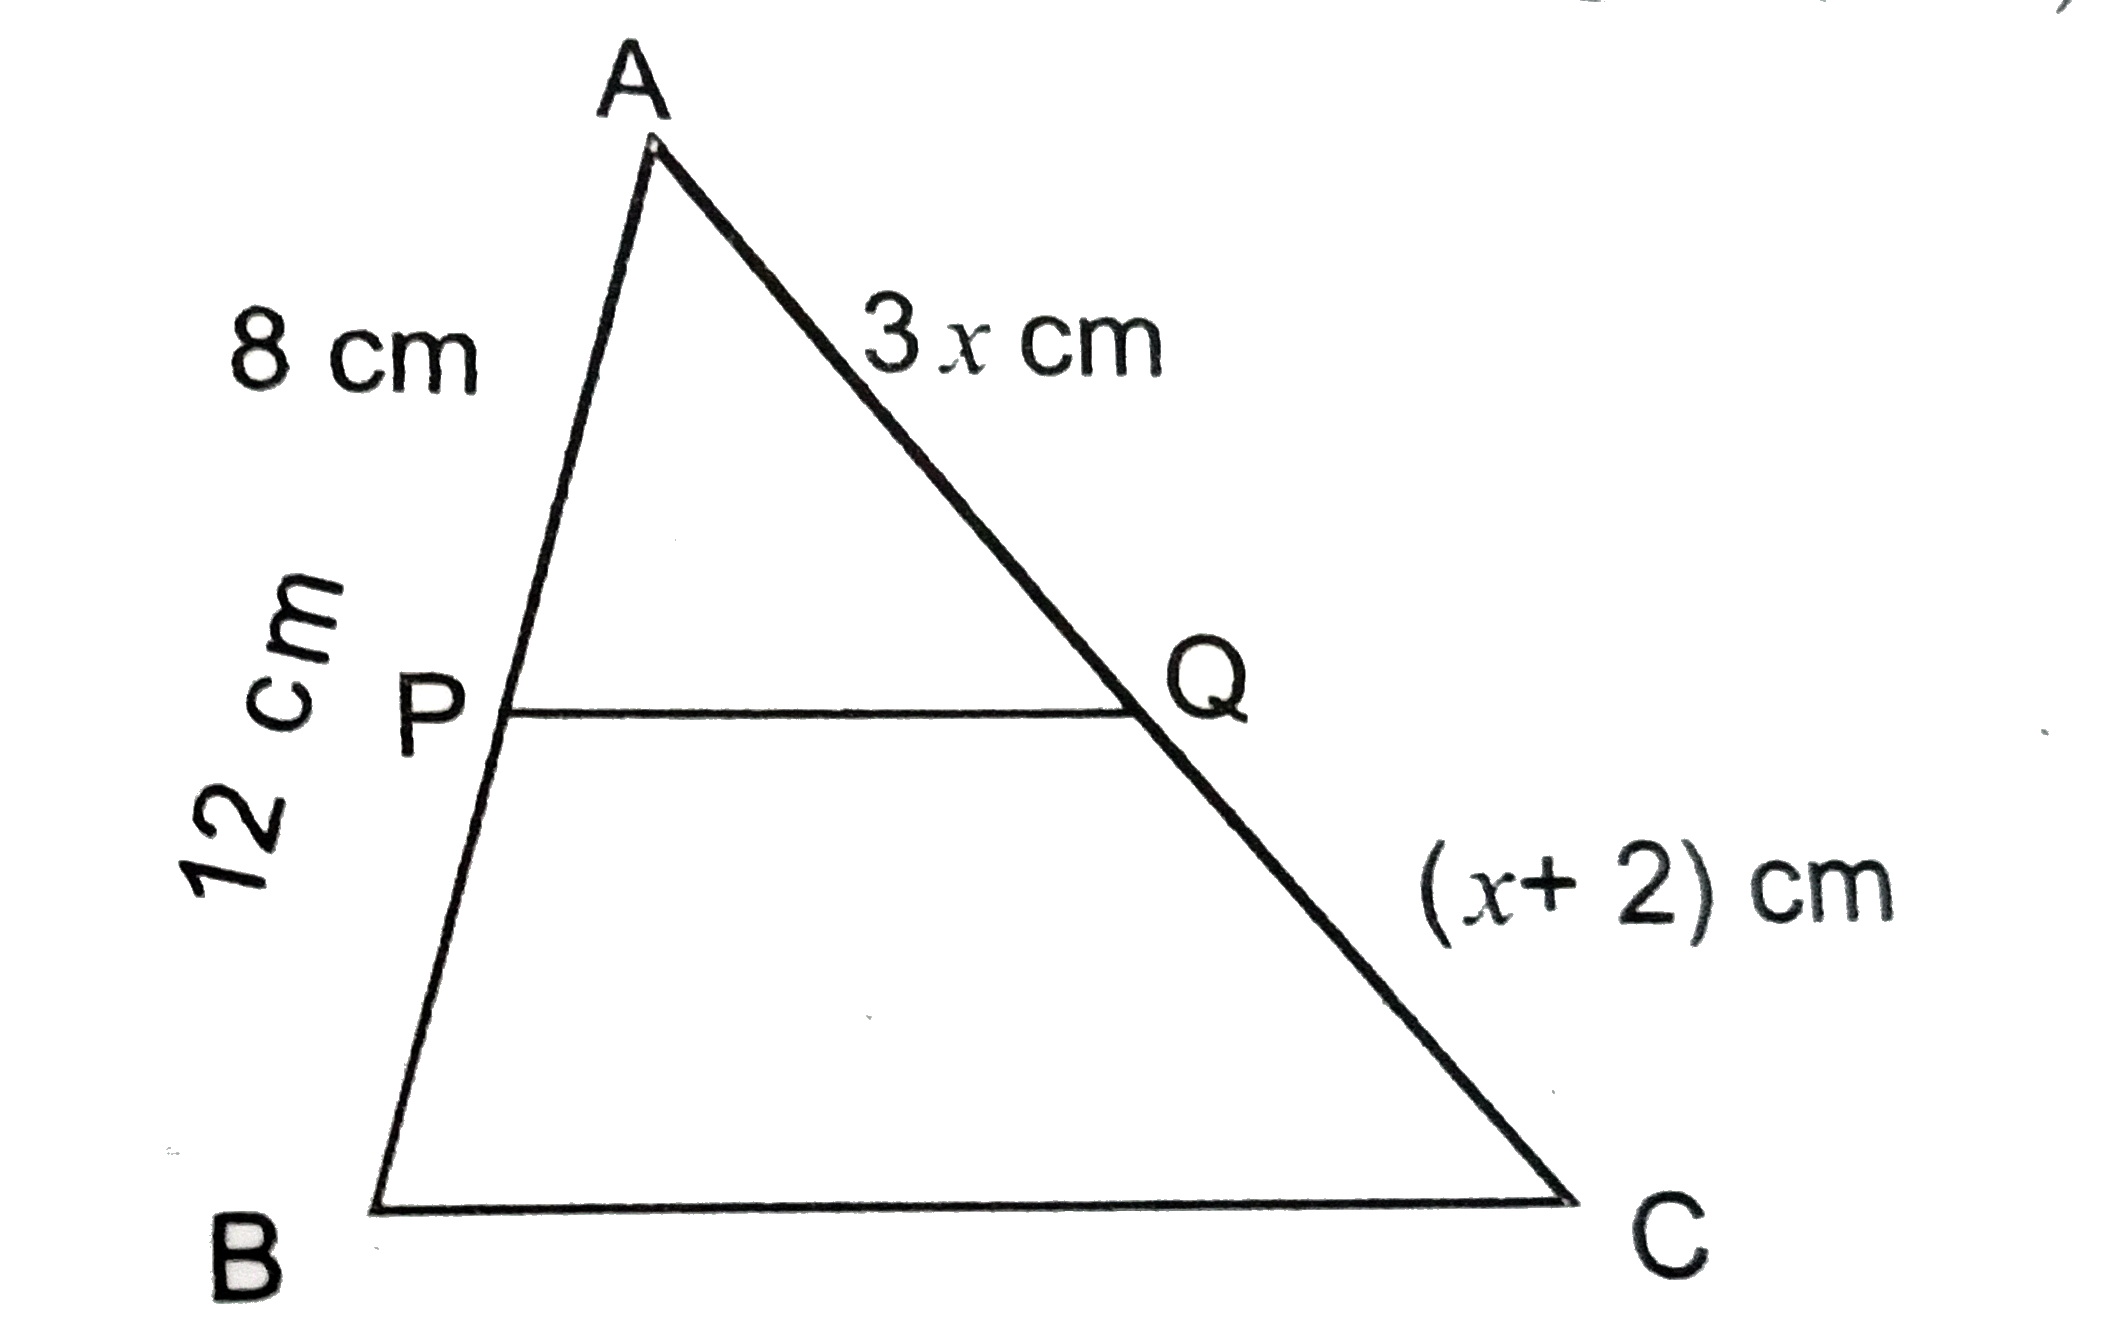 नीचे के चित्र में P और Q,DeltaABC की भुजाएँ AB और AC पर क्रमशः दो बिन्दु इस प्रकार है कि PQ||BC तथा AP=8cm,AB=12cm,AQ=3xcm,QC=(x+2)cm. x का मान ज्ञात करें ।